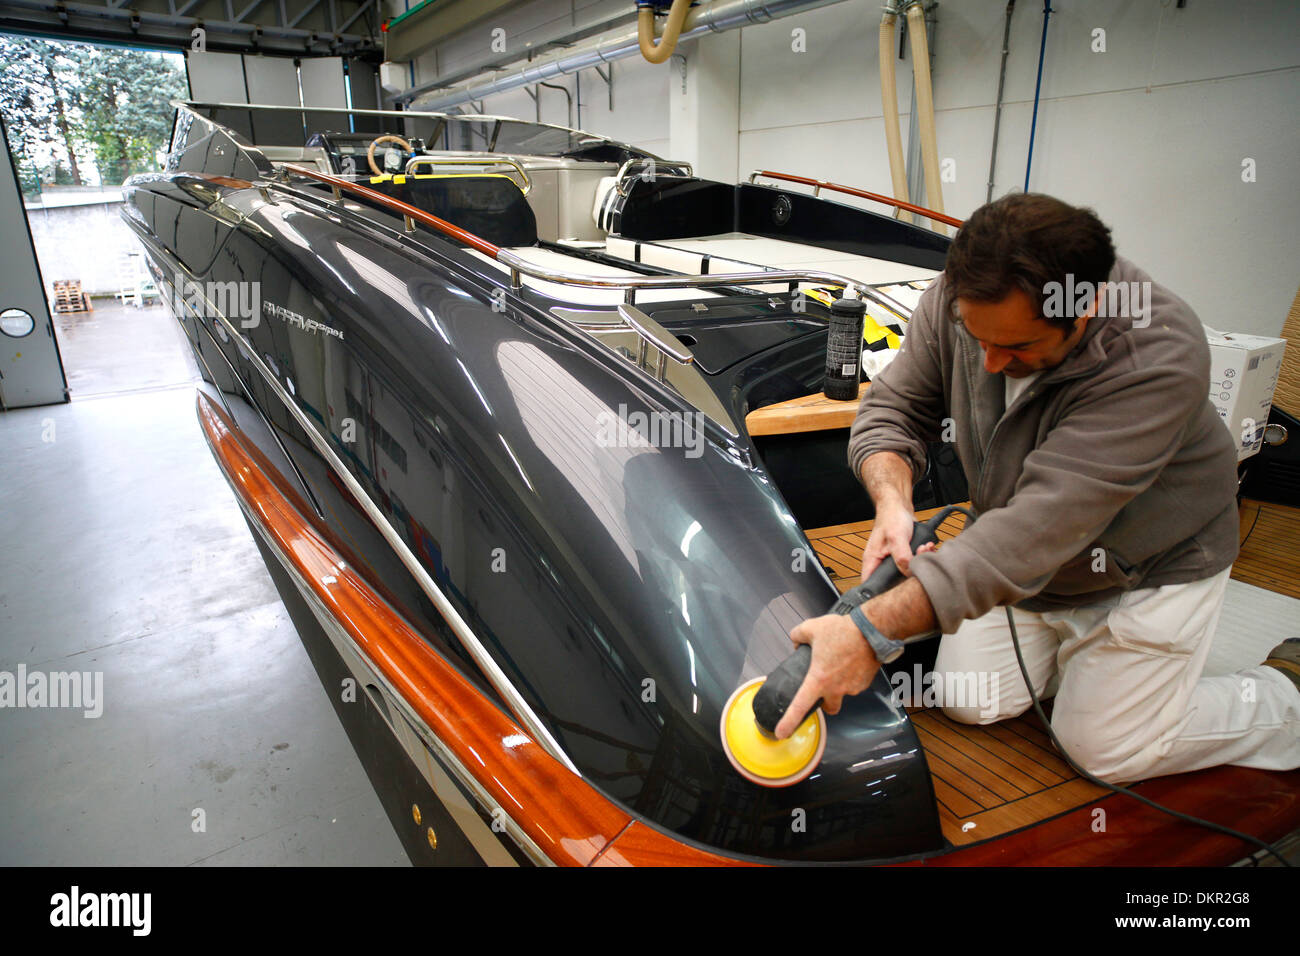 A Rivarama super yacht under construction at the Riva factory in Sarnico, Italy. Stock Photo